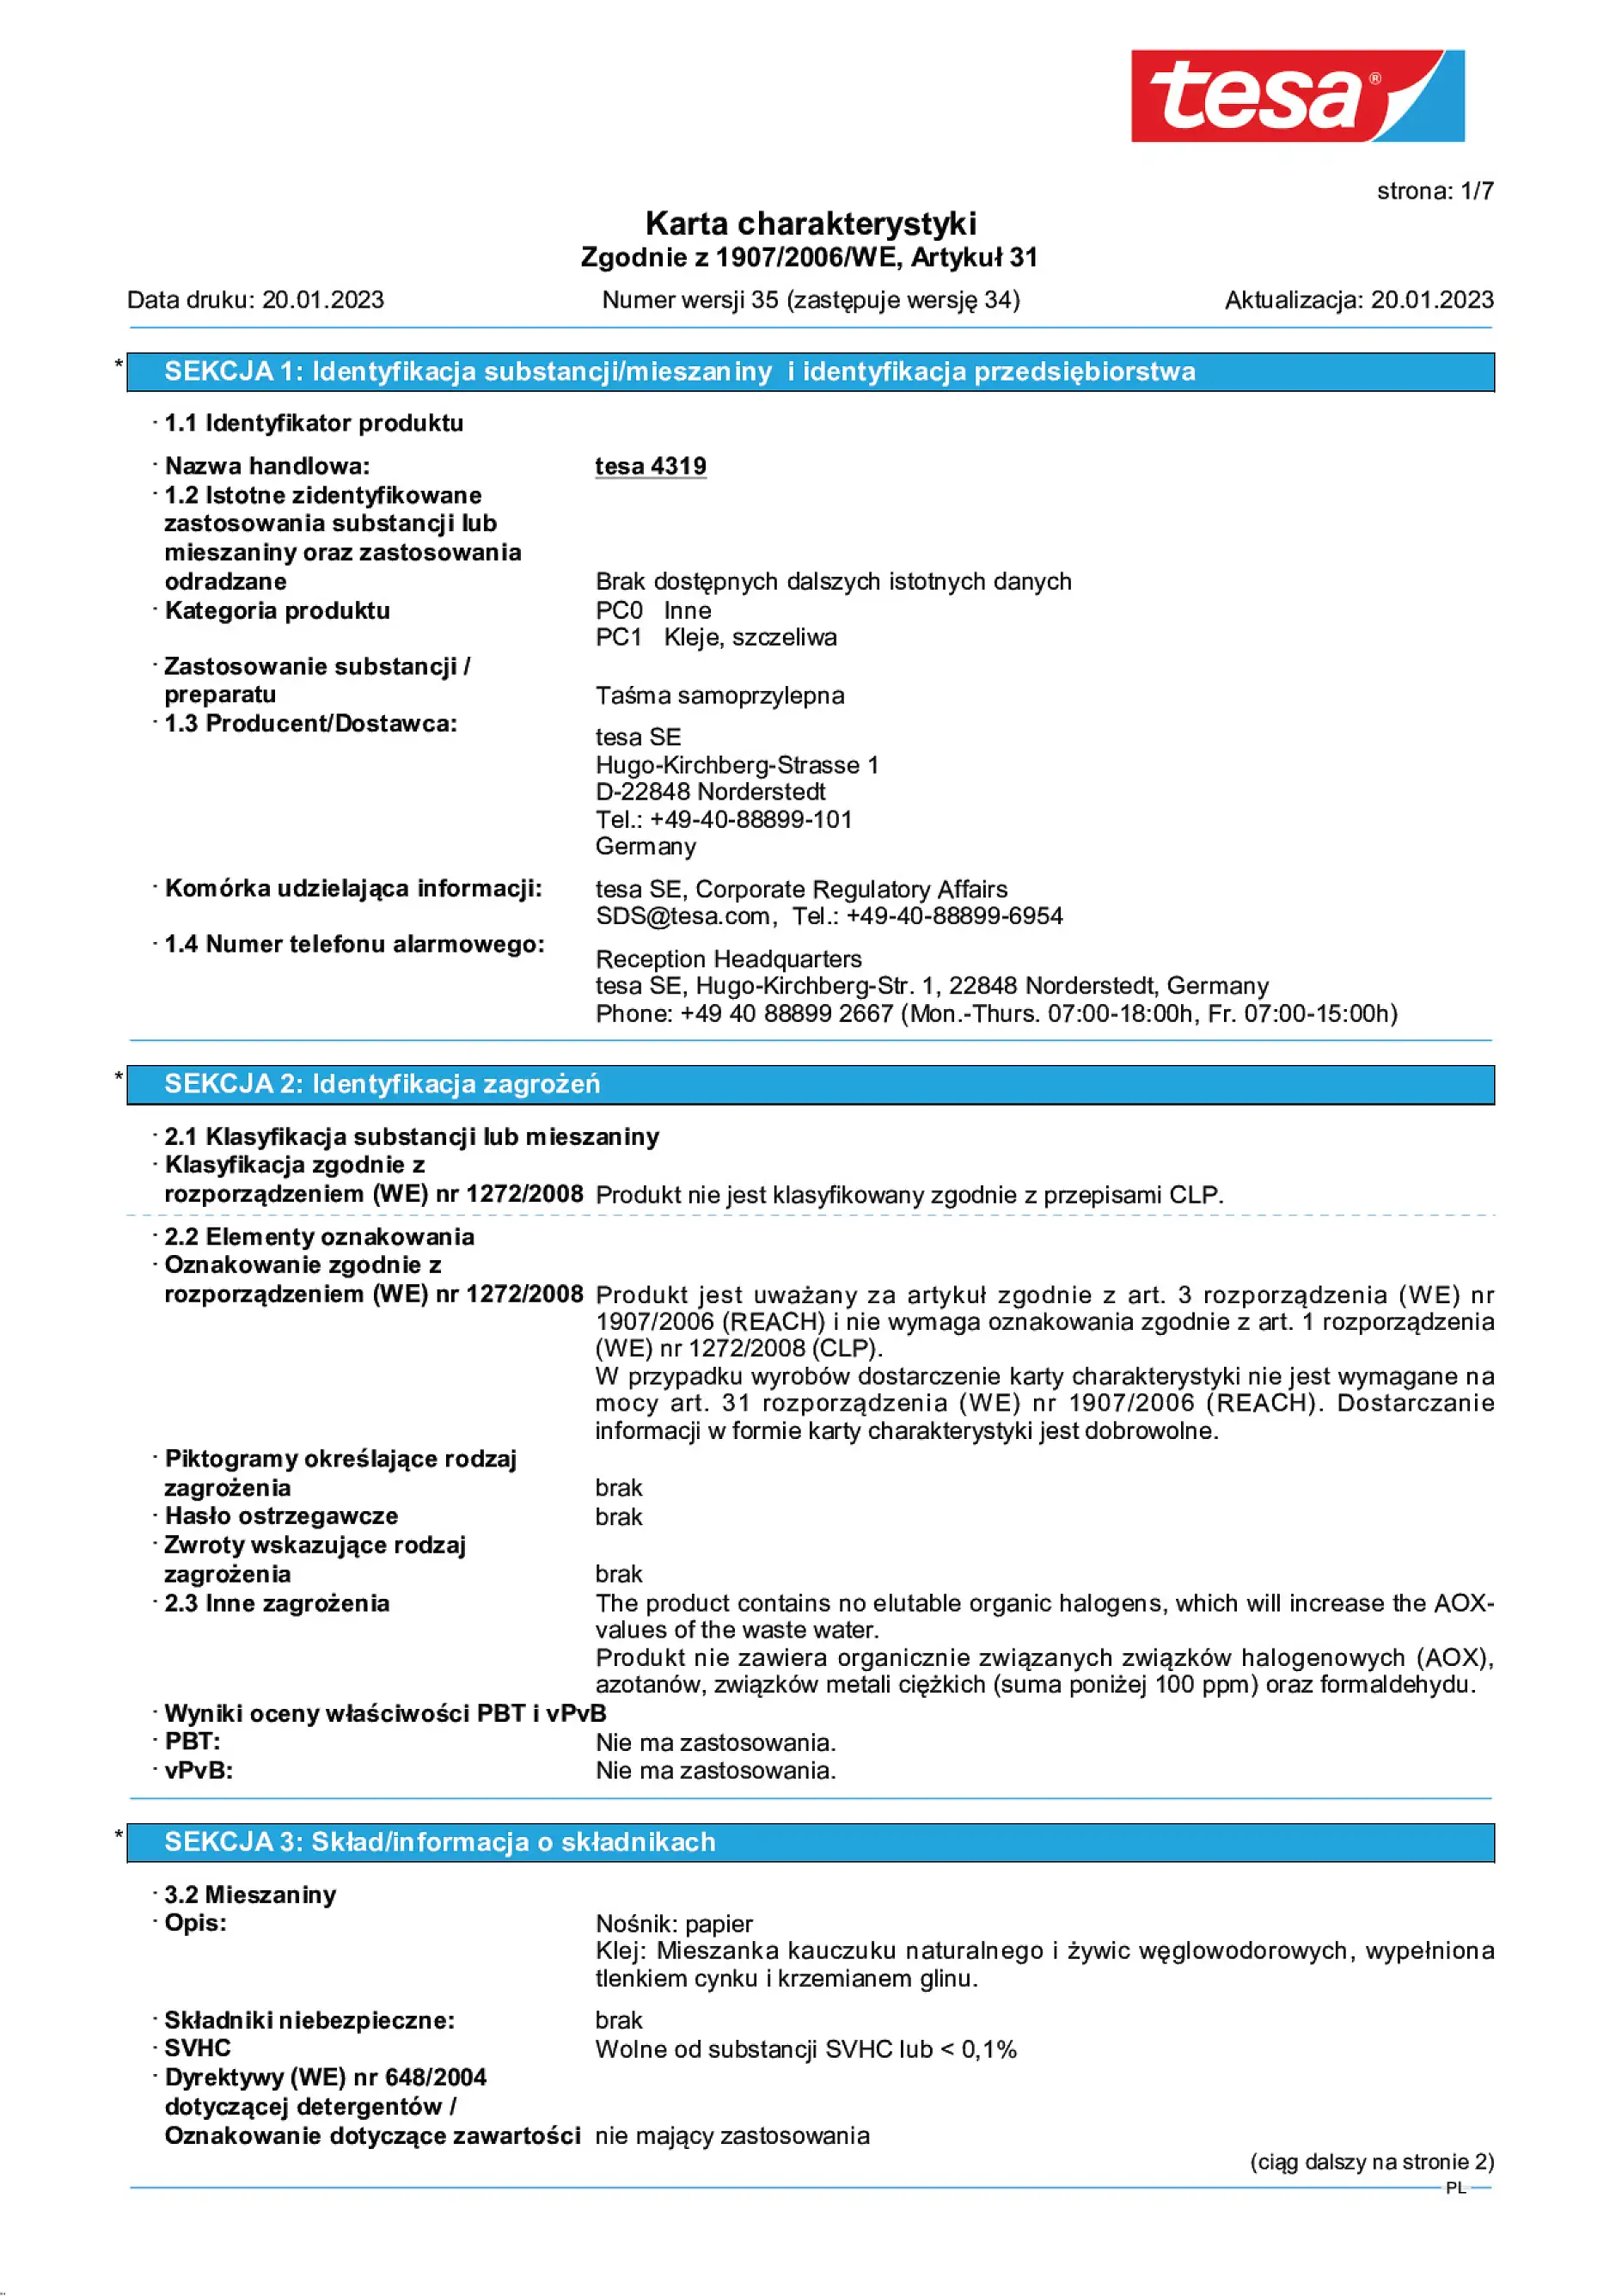 Safety data sheet_tesa® 04319_pl-PL_v35